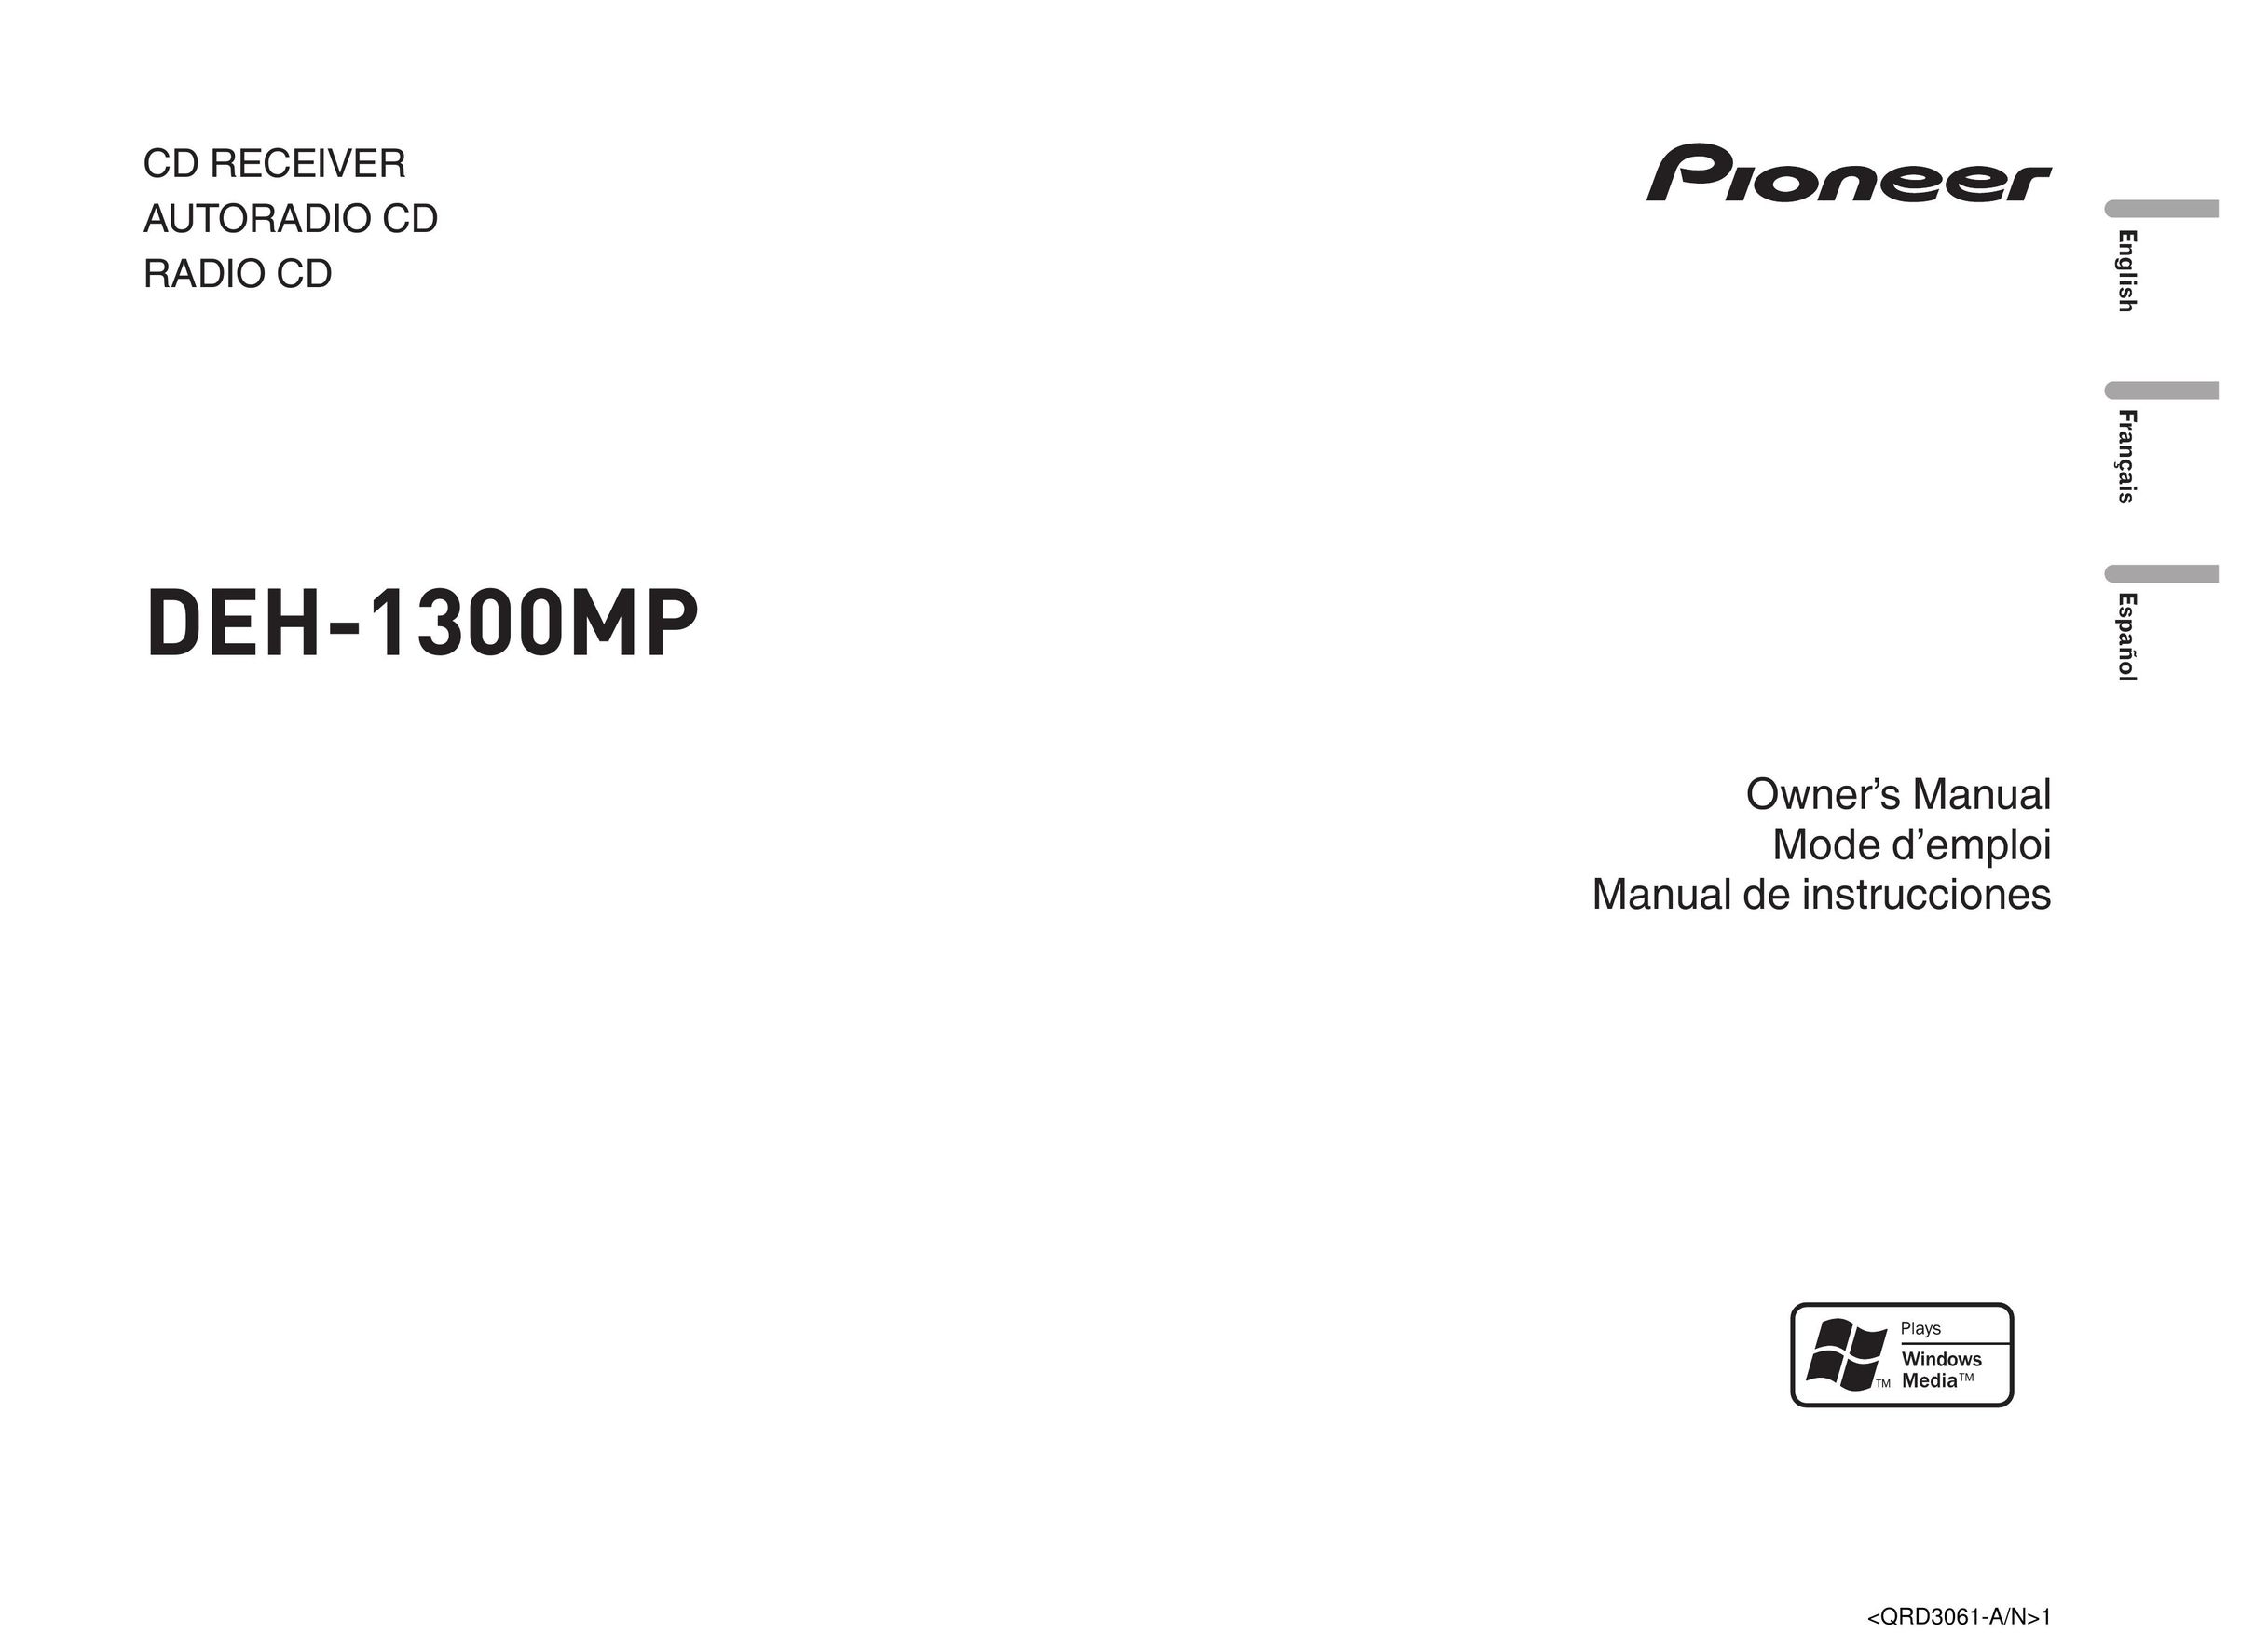 Pioneer DEH-1300MP CD Player User Manual